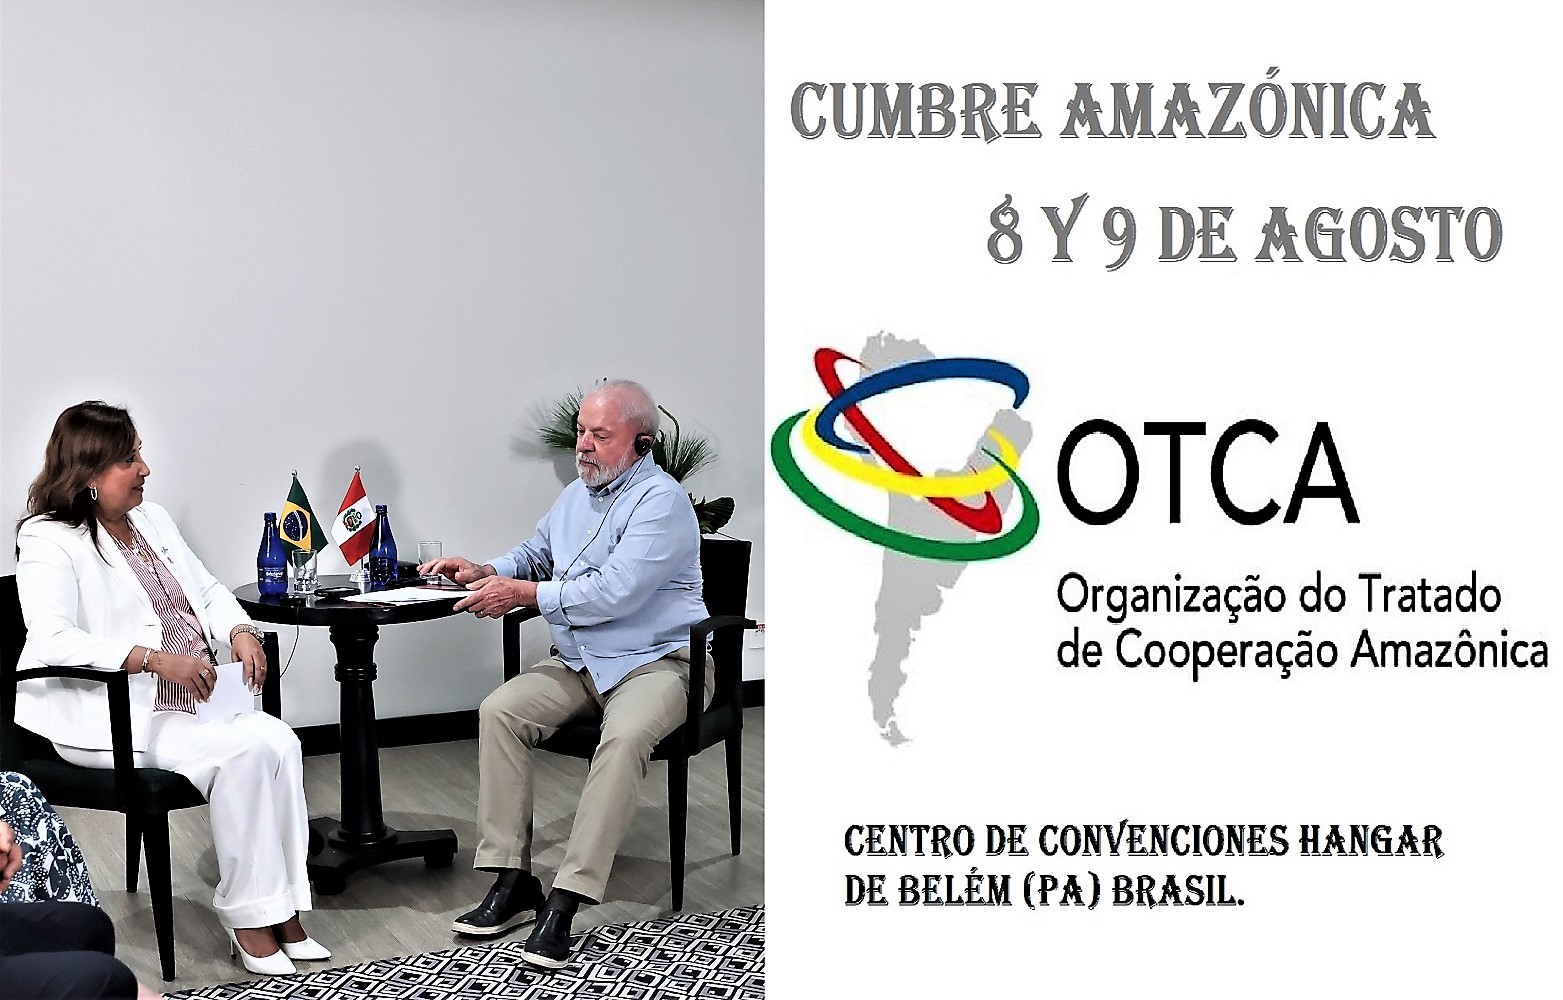 Presidenta Boluarte participa en Cumbre Amazónica junto a los Presidentes de los Estados partes del Tratado de Cooperación Amazónica en Brasil.